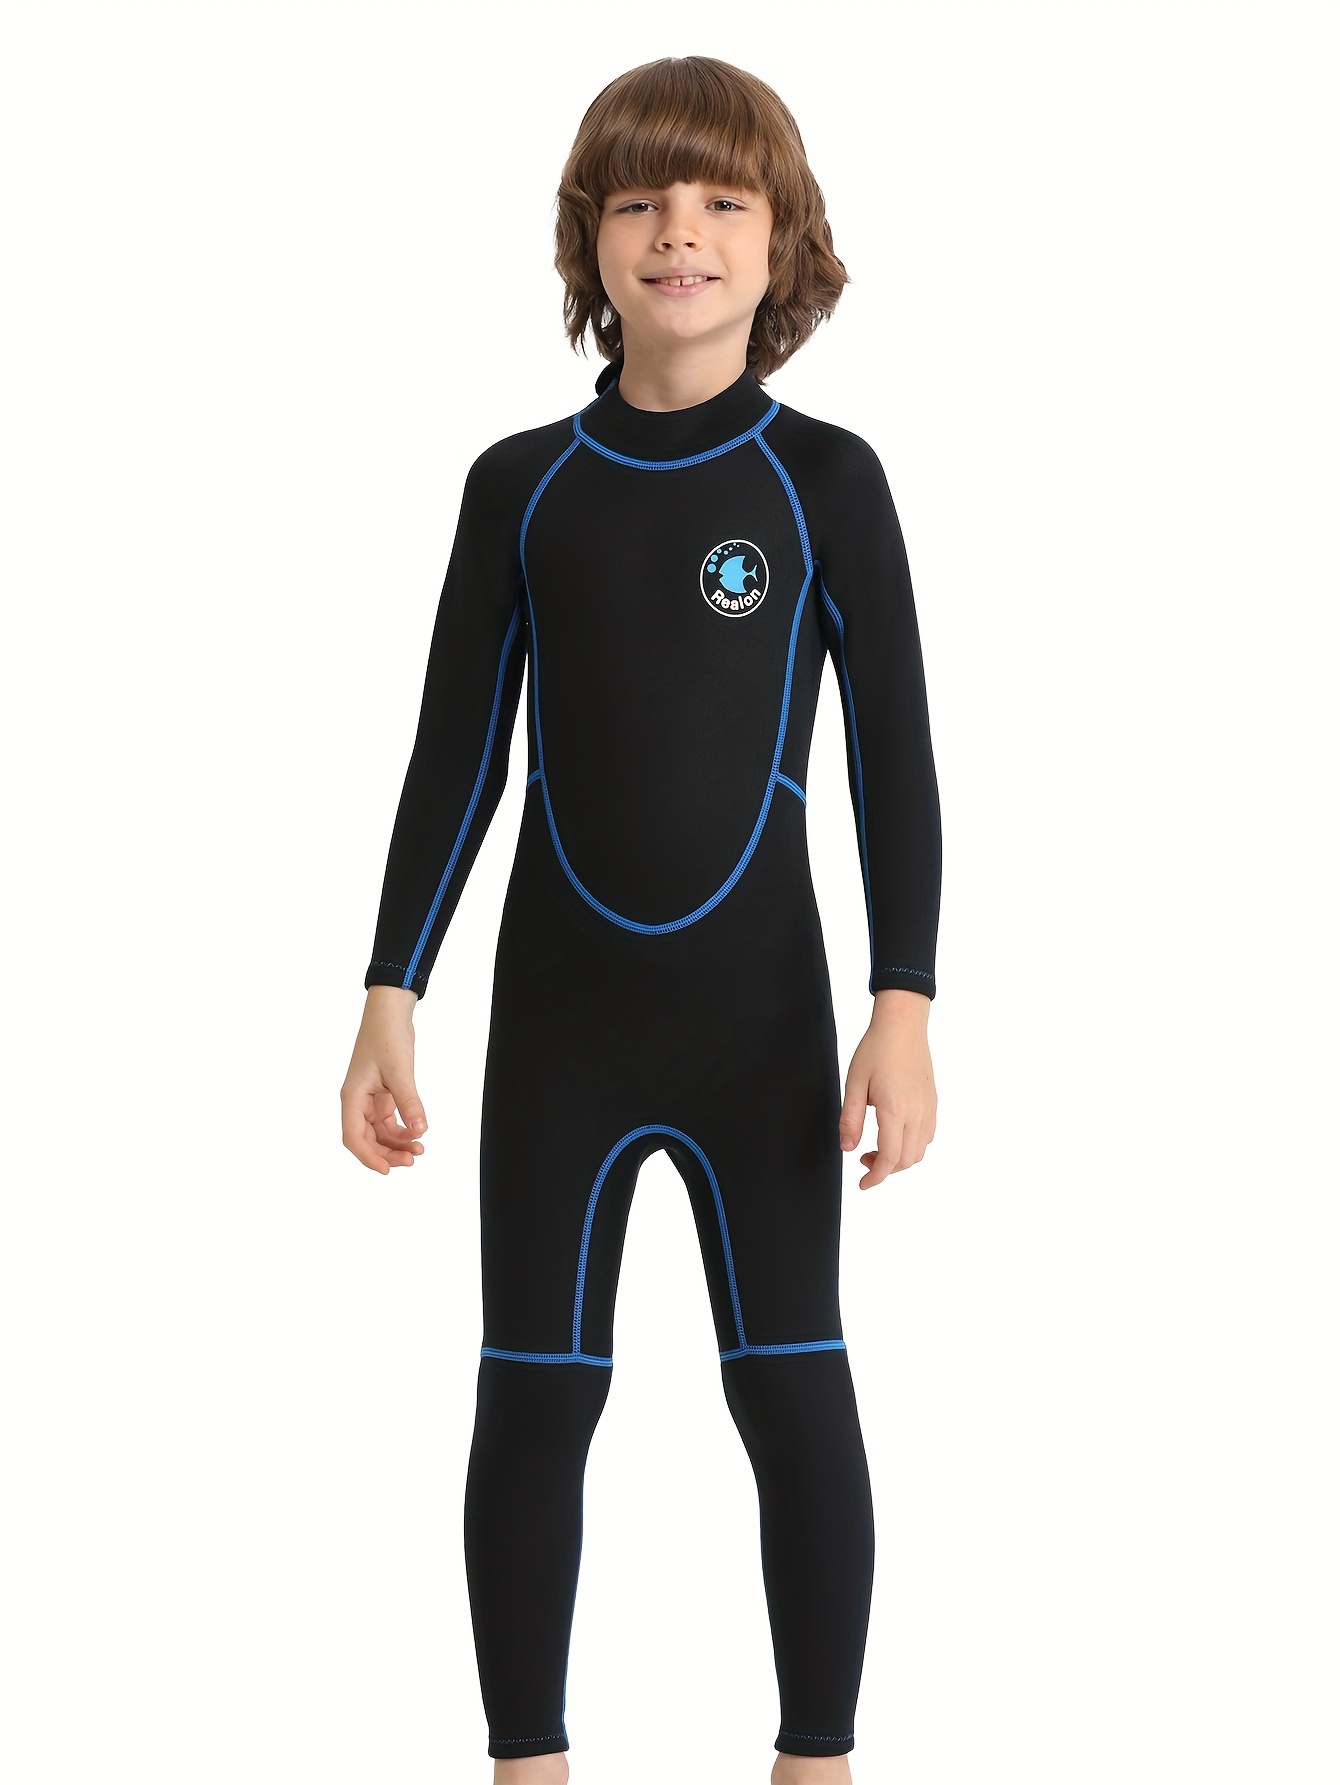 REALON Wetsuit Kids for Children Boys Girls, Wet Suit Toddler 2t to 13t  Youth 2.5mm 3mm Neoprene Swimsuits Long Sleeve Back Zipper Fullsuit for